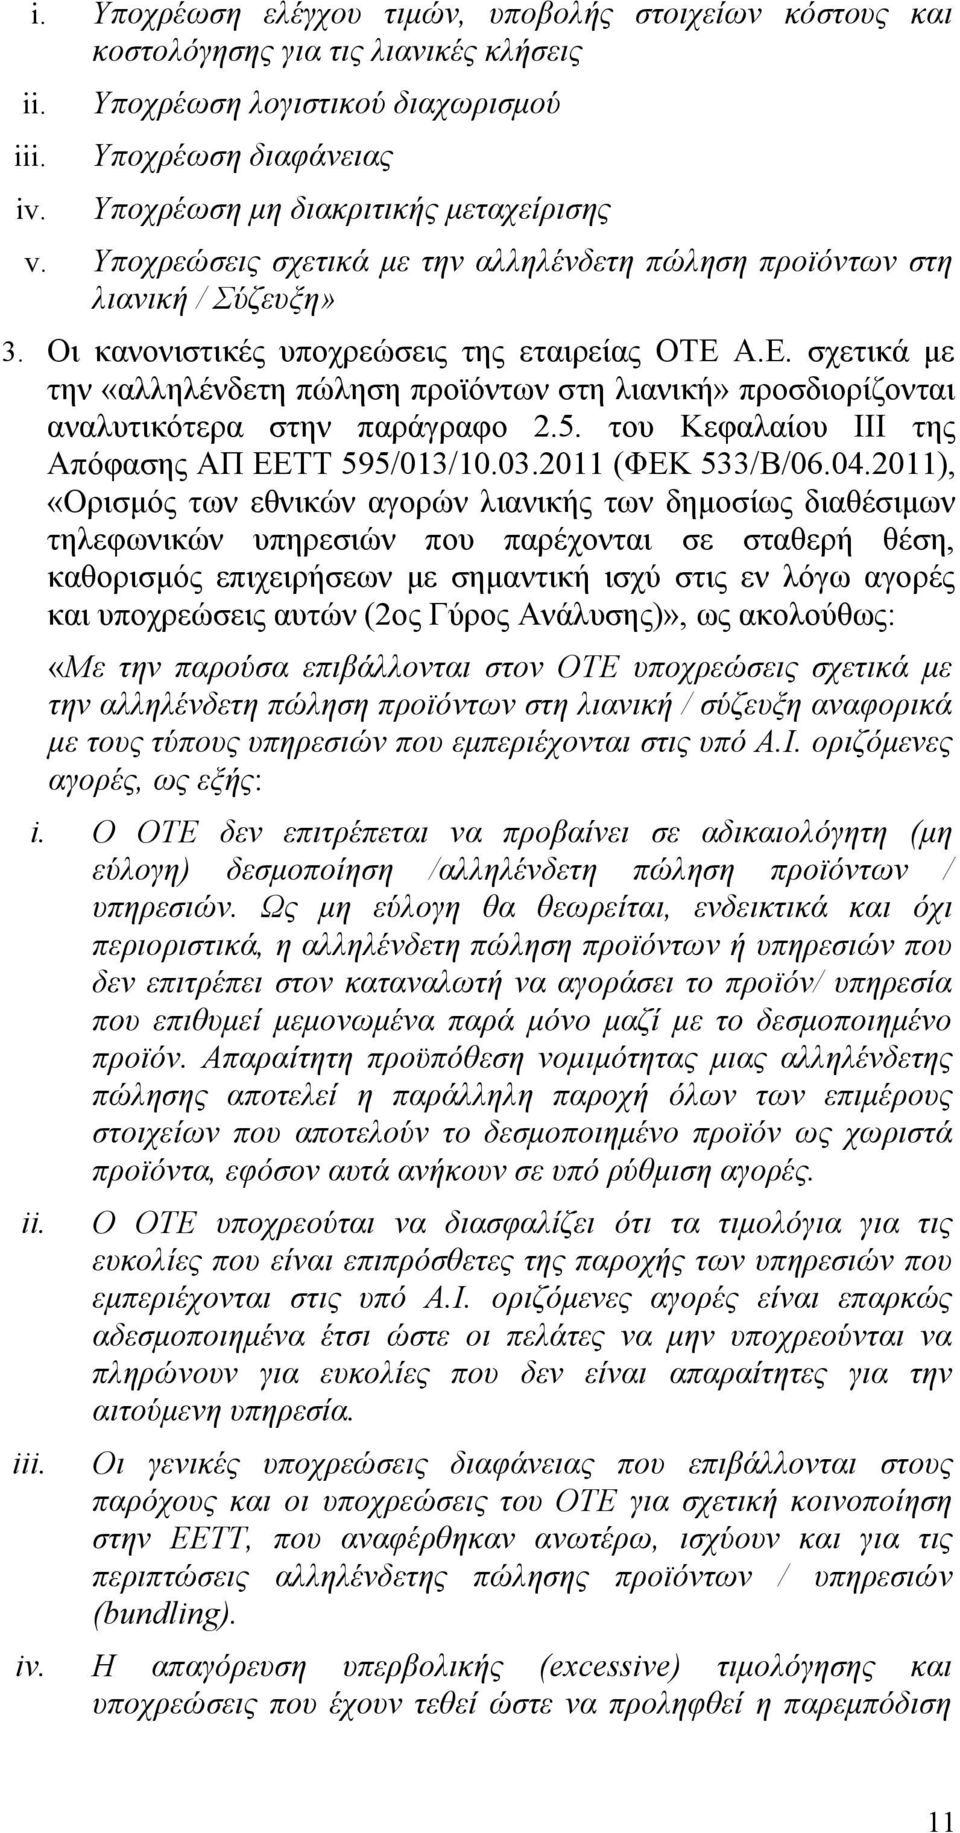 Οι κανονιστικές υποχρεώσεις της εταιρείας ΟΤΕ Α.Ε. σχετικά με την «αλληλένδετη πώληση προϊόντων στη λιανική» προσδιορίζονται αναλυτικότερα στην παράγραφο 2.5.